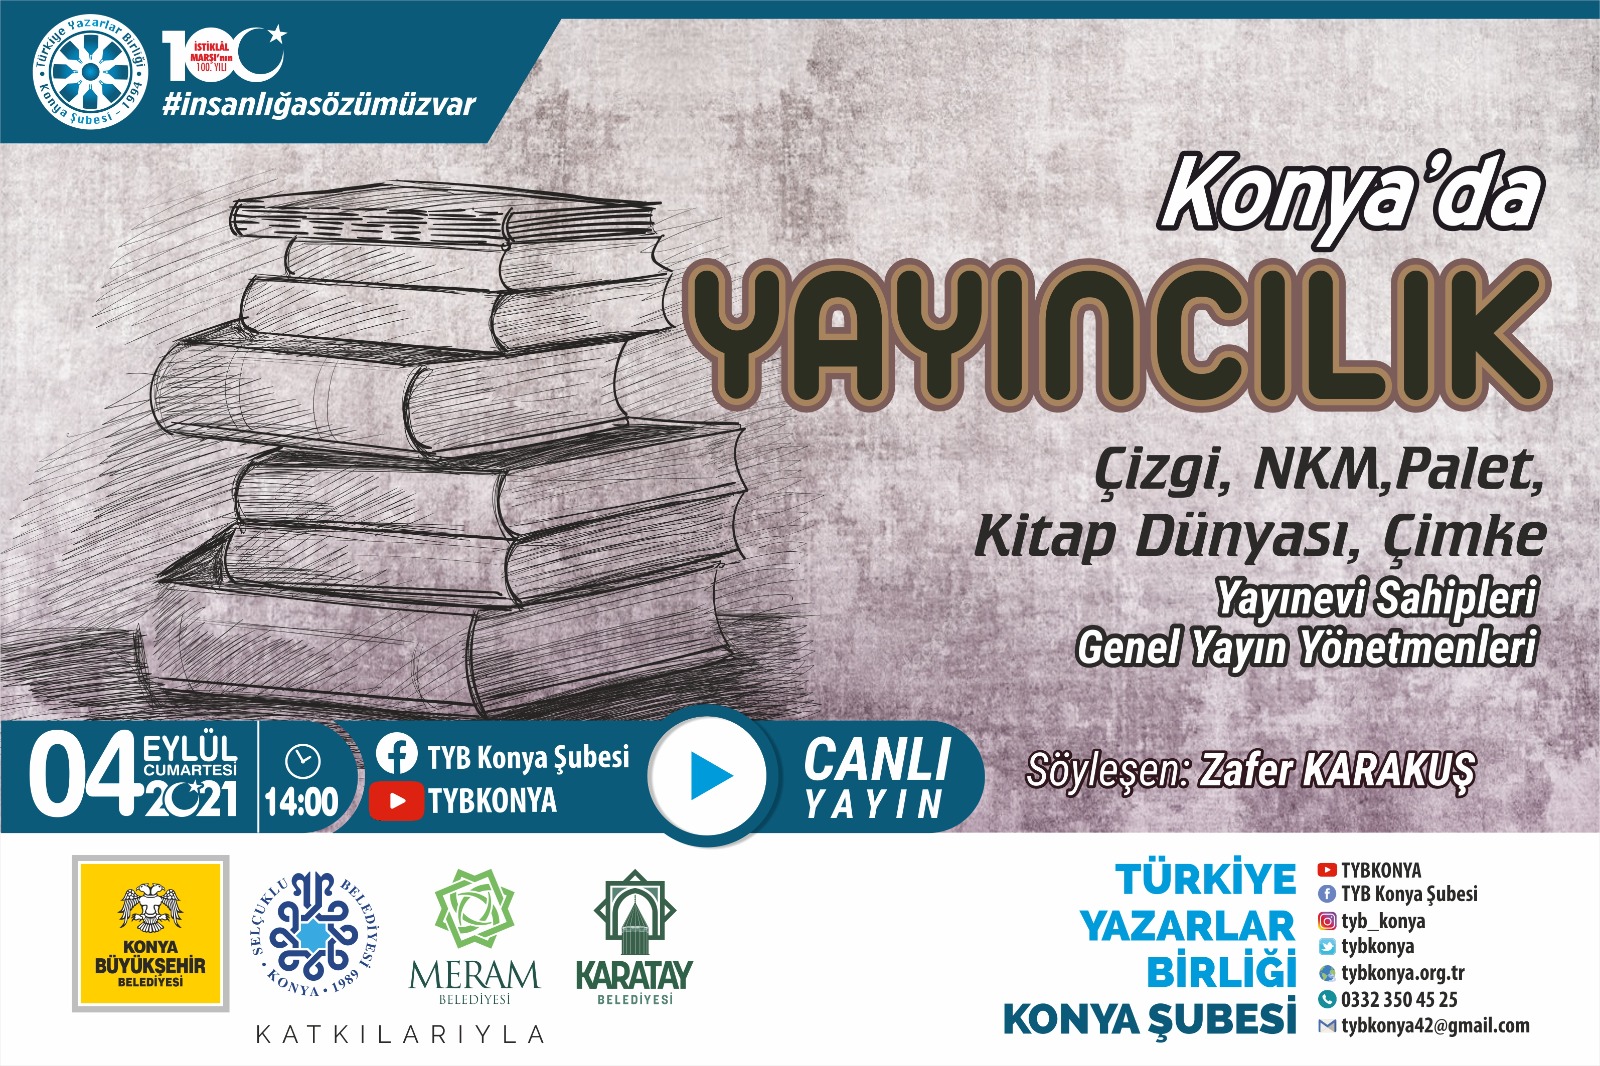 Konya'da YAYINCILIK; Çizgi, NKM, Palet, Kitap Dünyası, Çimke Yayınevi Sahipleri, Genel Yayın Yönetmenleri